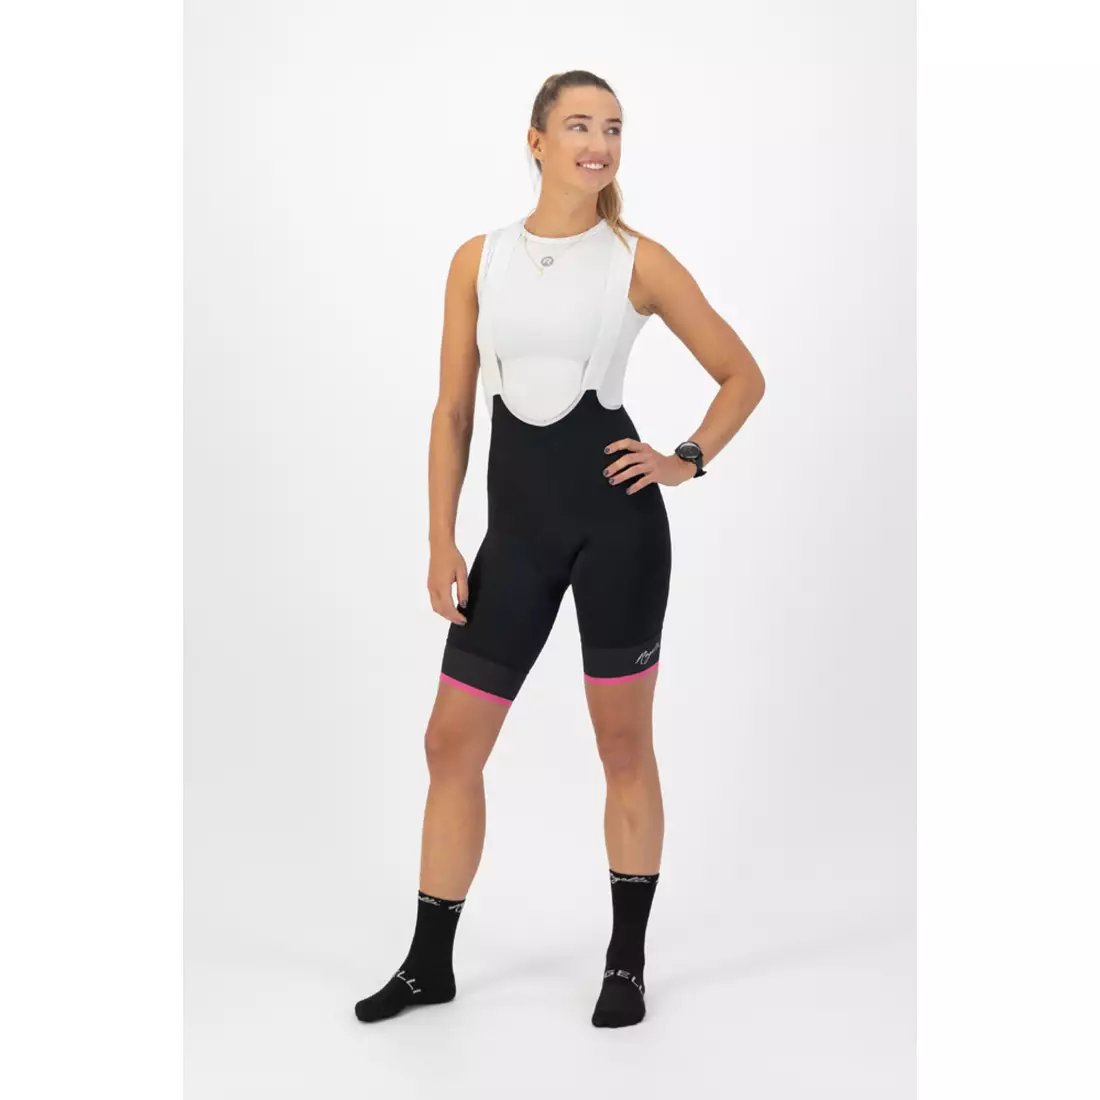 ROGELLI SELECT II Damen-Radhose mit Hosenträgern, schwarz und pink